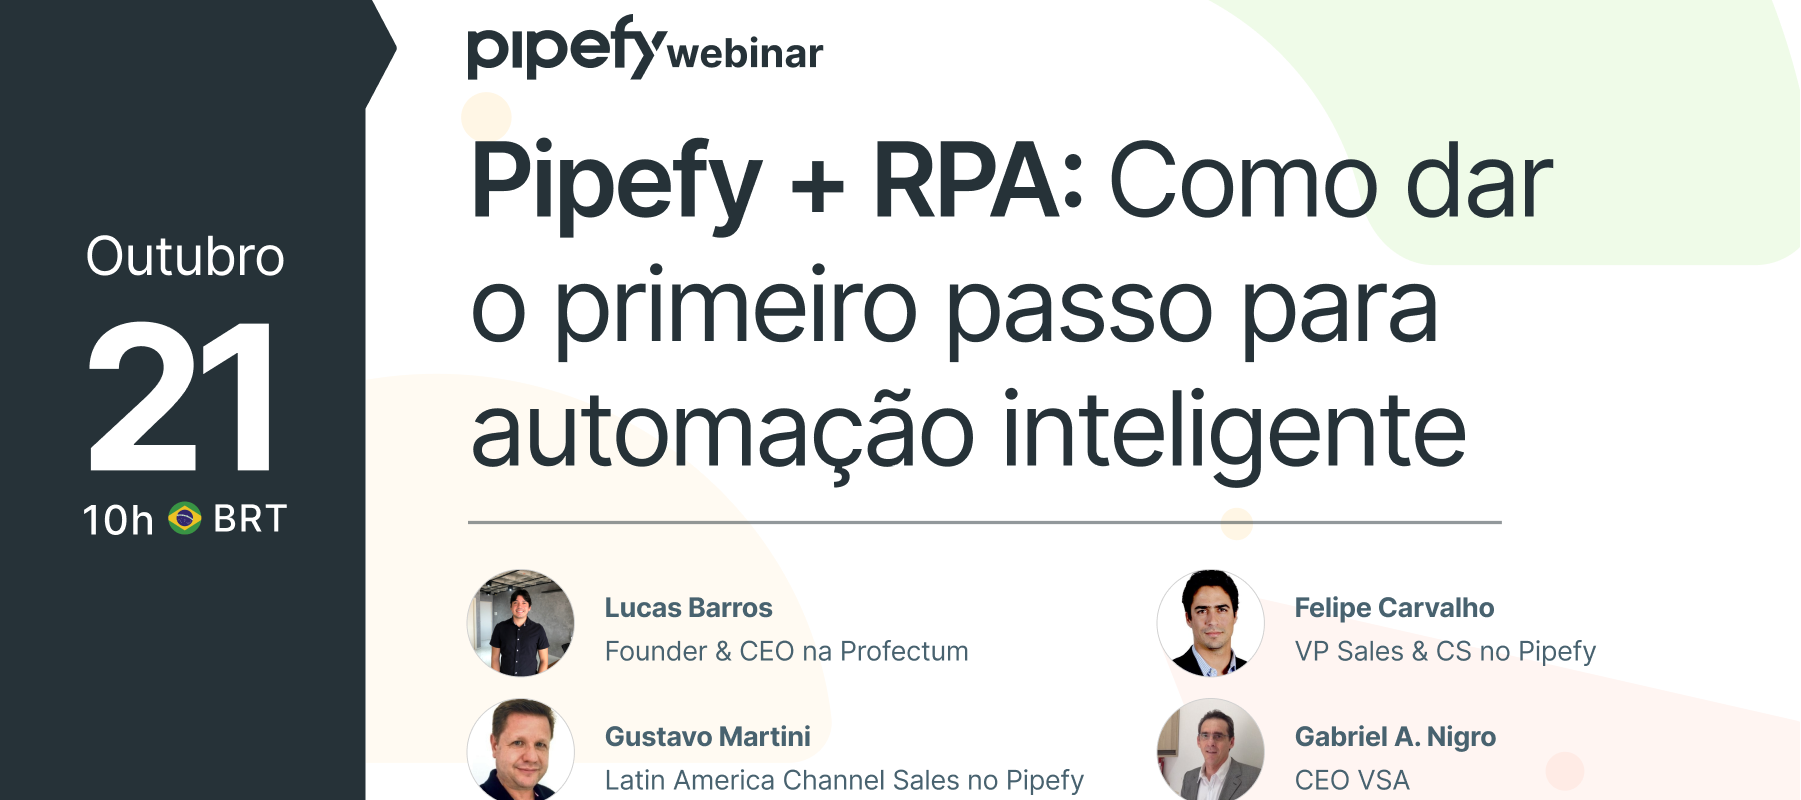 Pipefy + RPA: Como dar o primeiro passo para automação inteligente